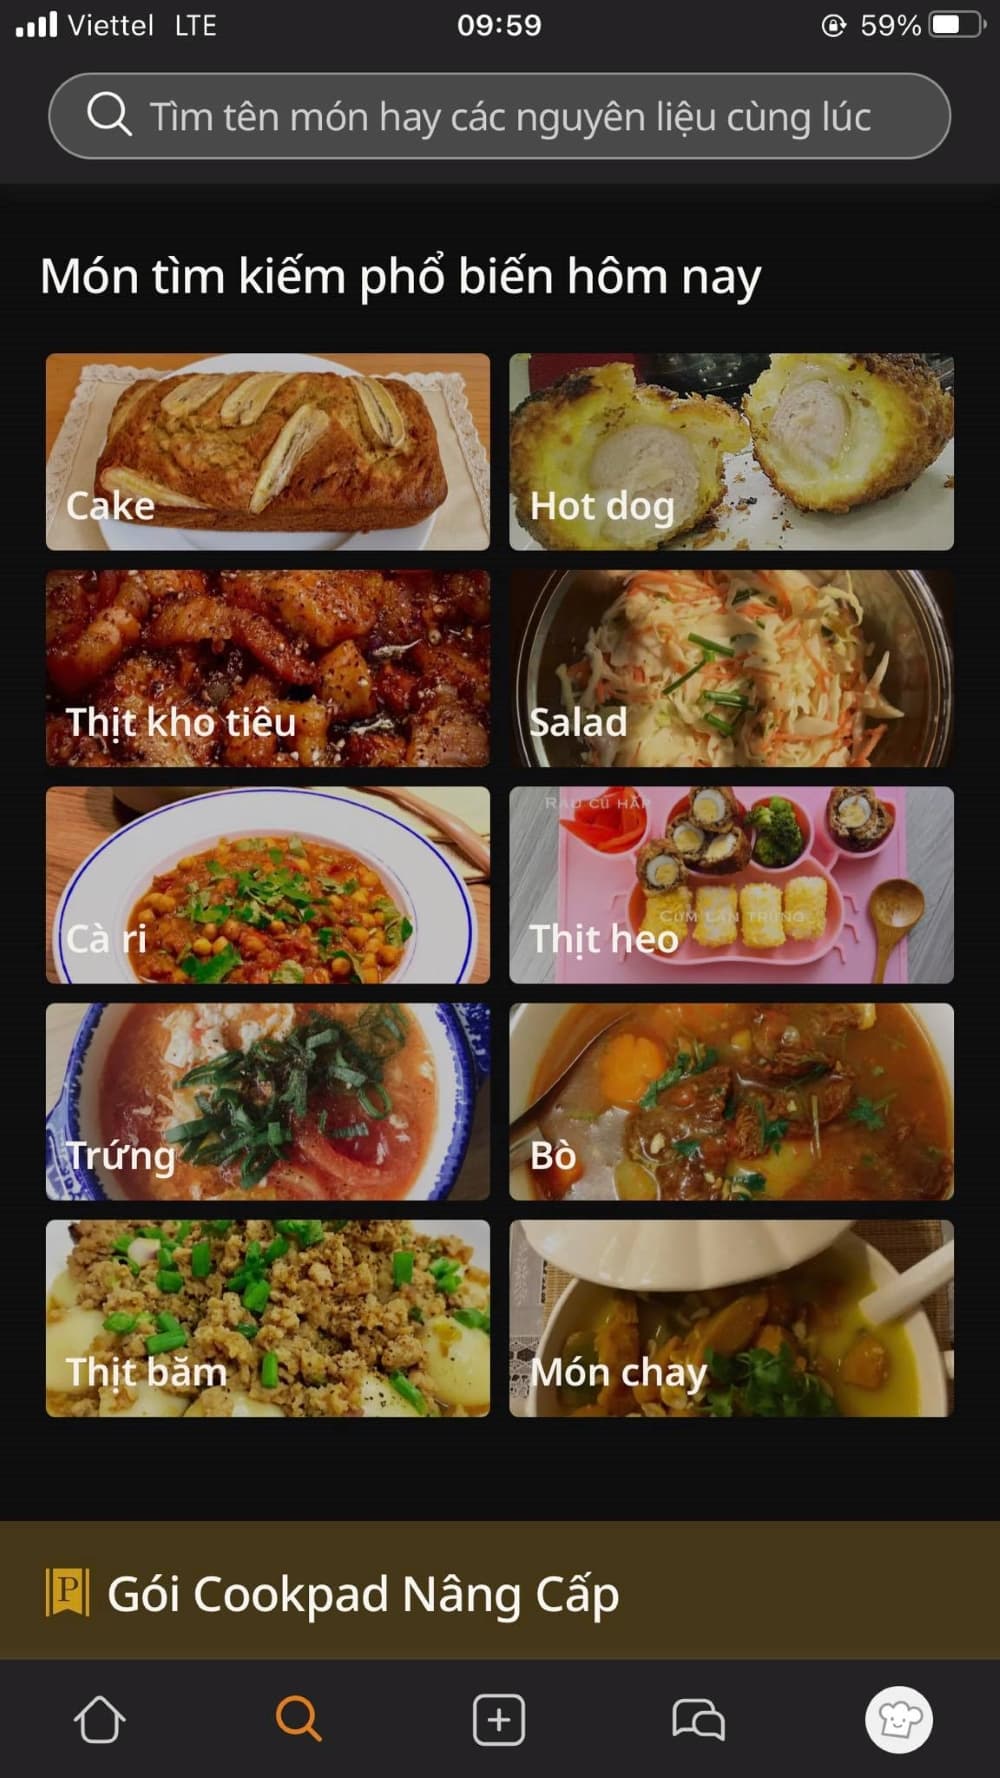 Thông tin cơ bản về ứng dụng Cookpad